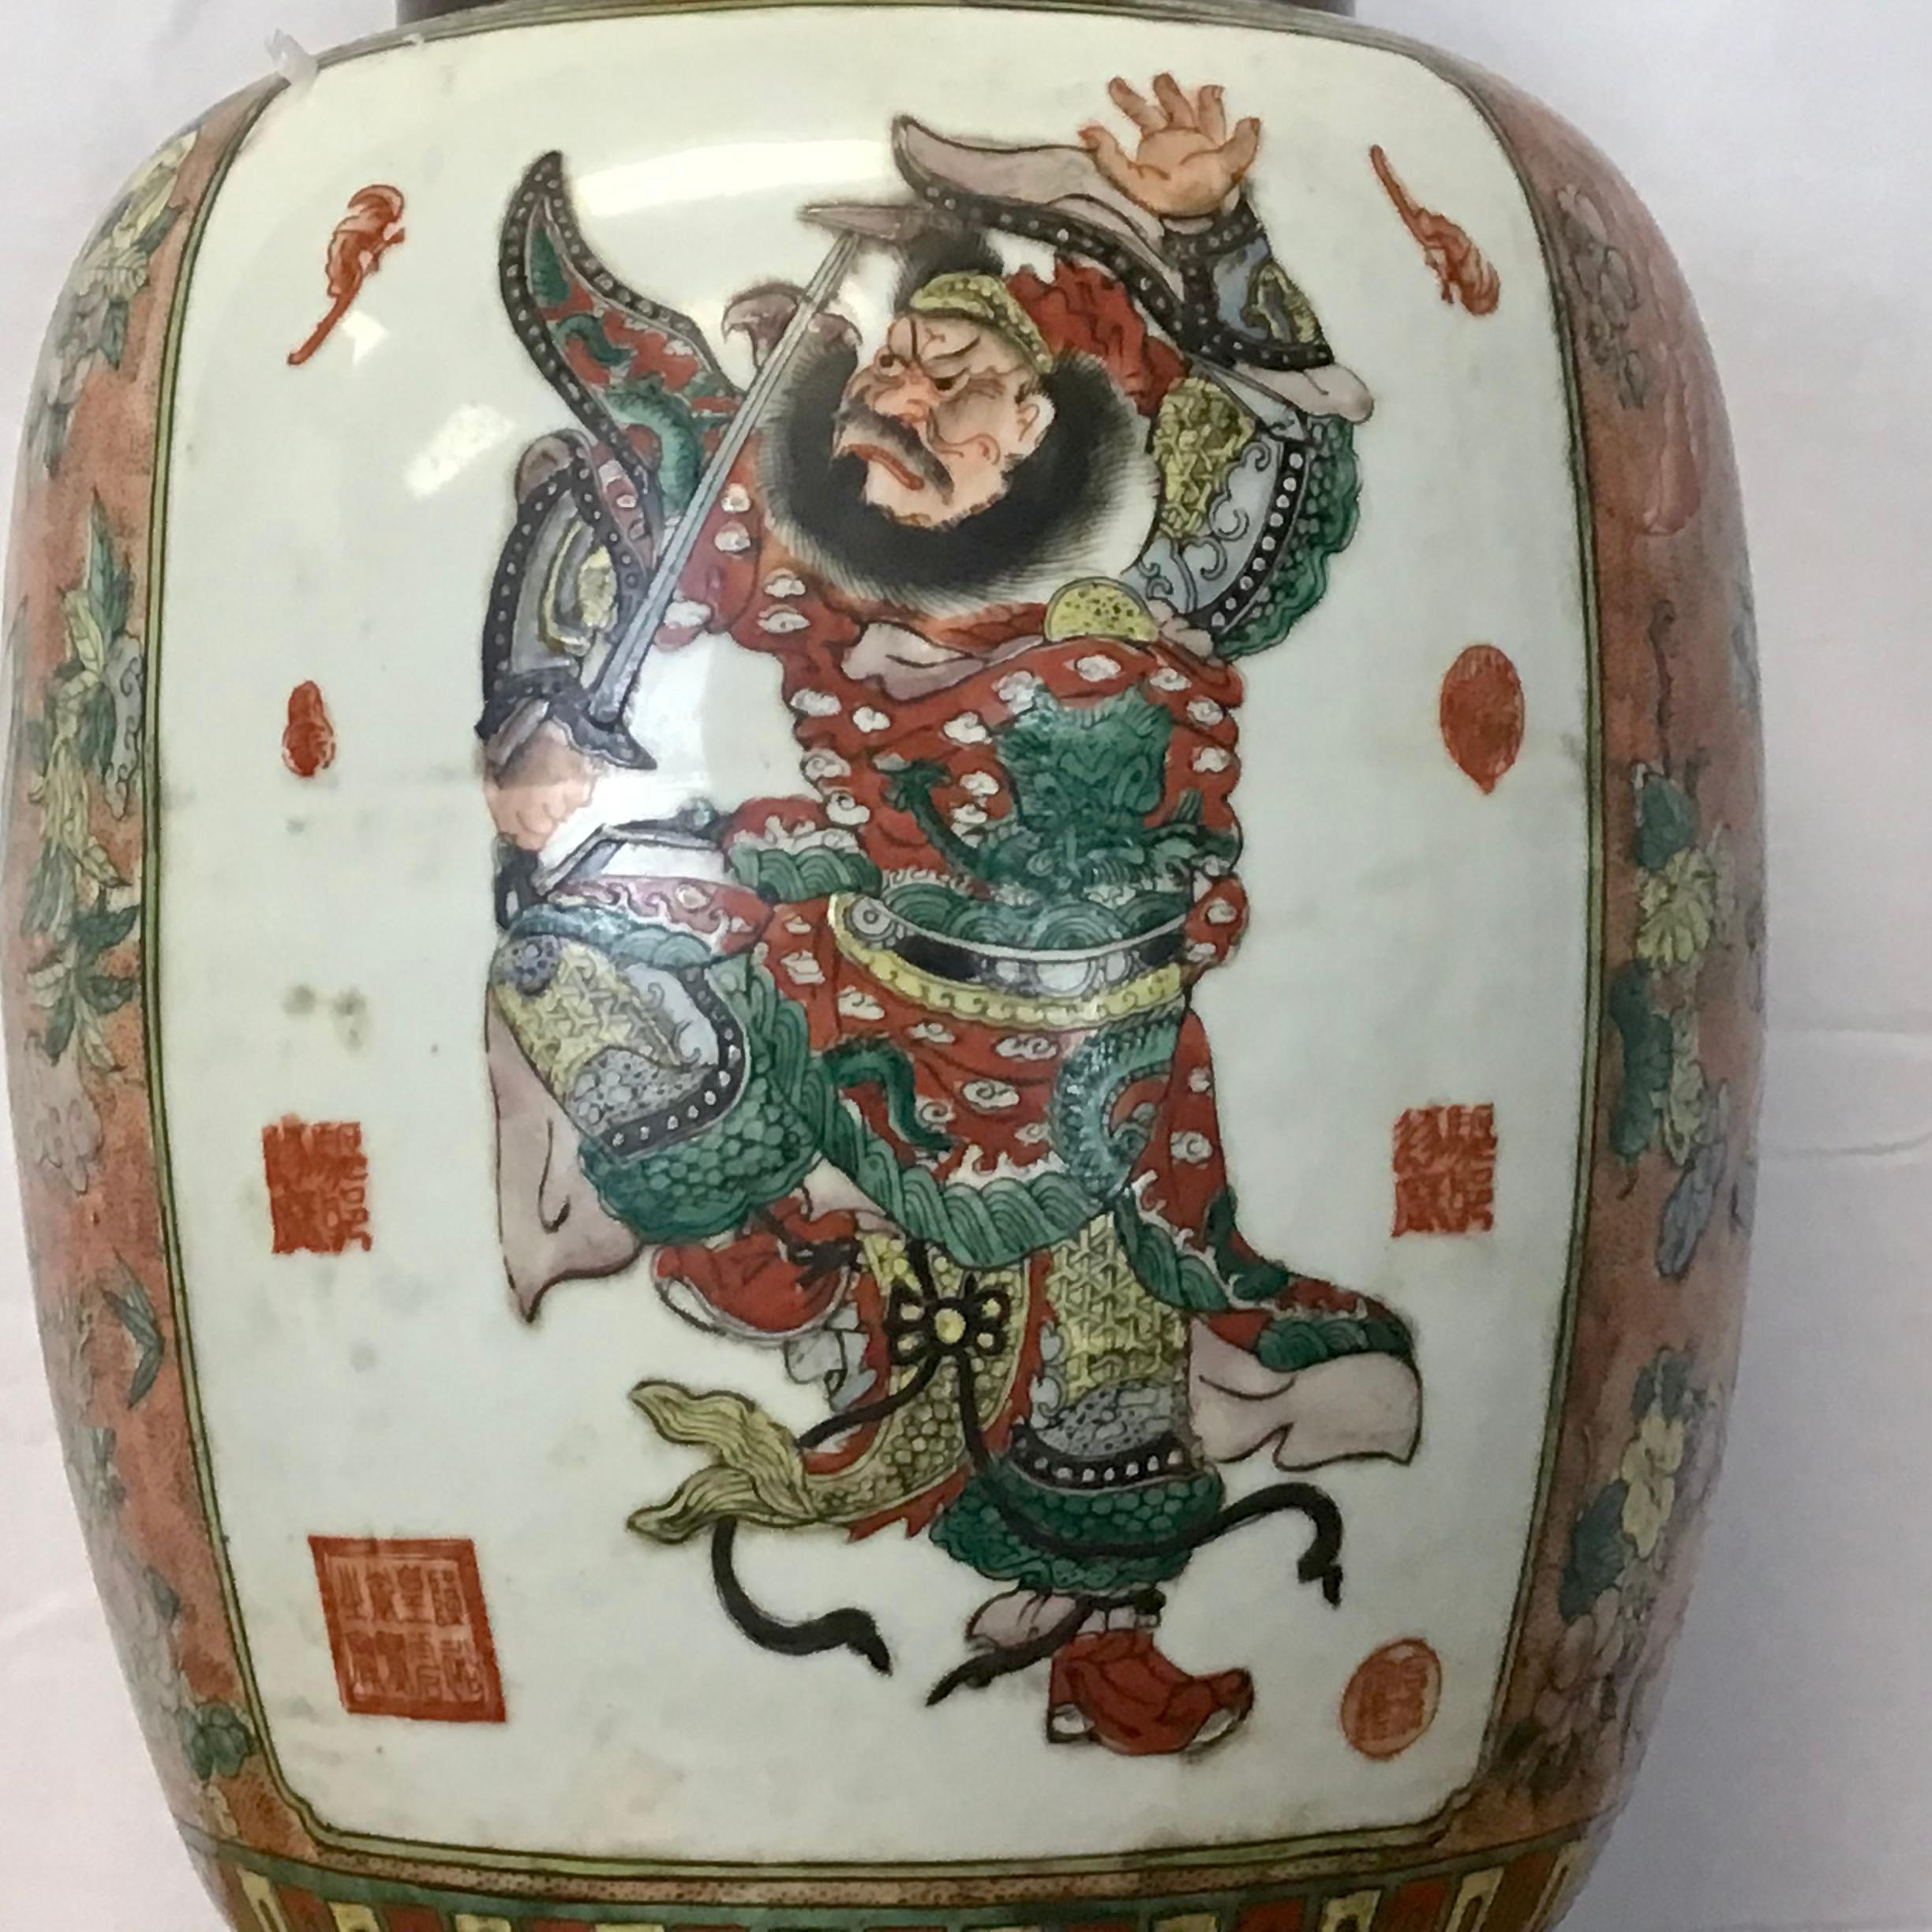 Dies ist eine ziemlich beeindruckende chinesische Porzellanvase, die im frühen 20. Jahrhundert für den Export in den Westen hergestellt wurde. Die Vase ist auf einen schweren Messingsockel montiert.
Das Porzellan ist auf Vorder- und Rückseite mit